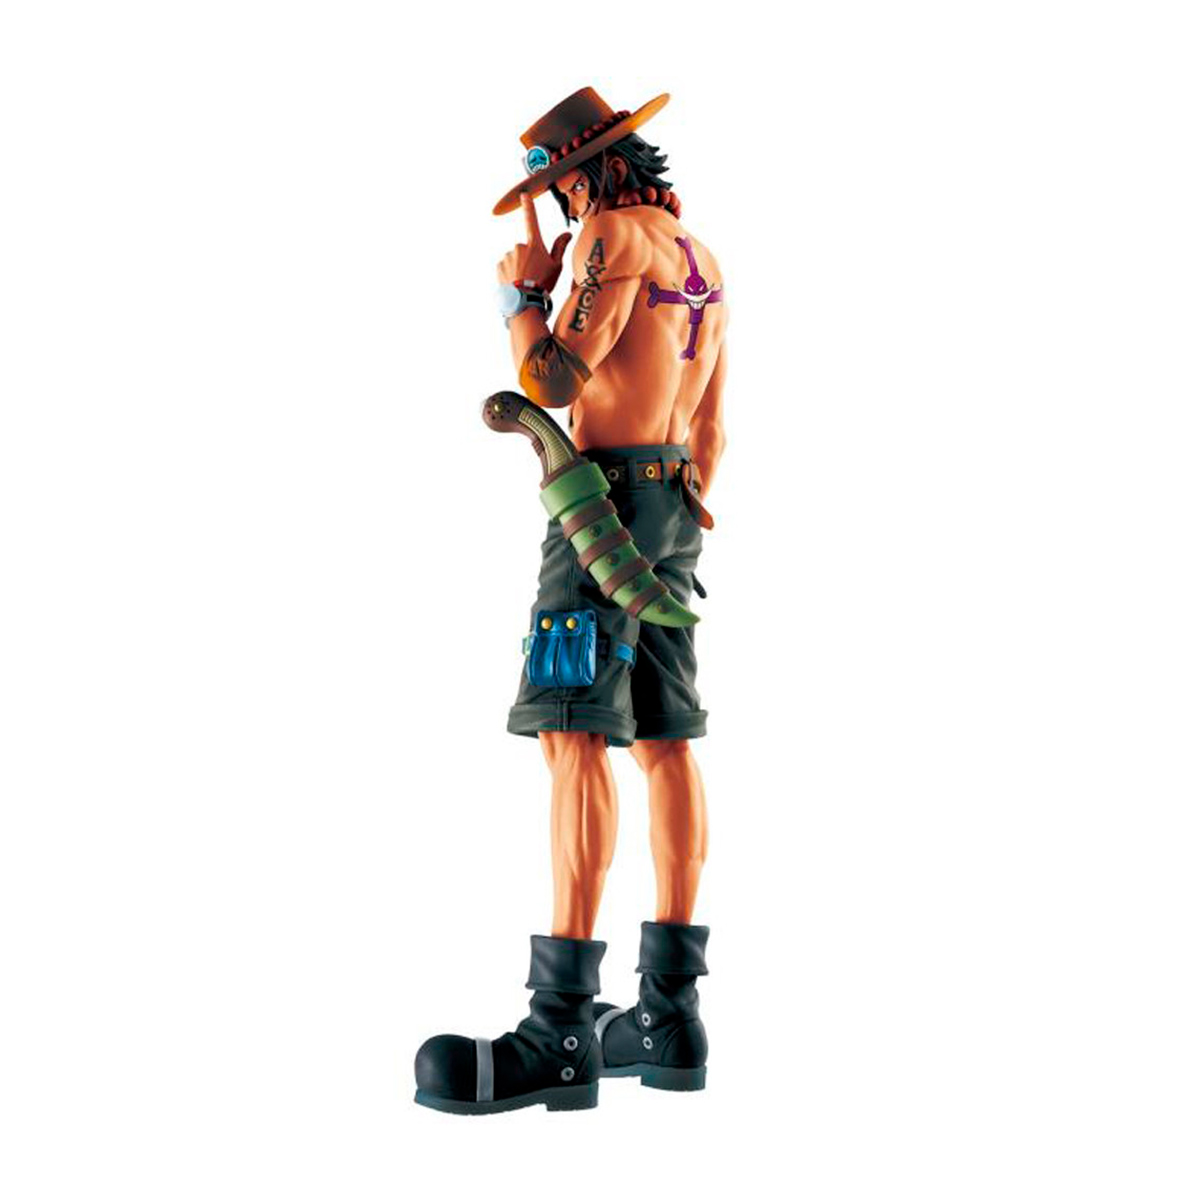 Action Figure - One Piece Memory Figures - Portgas D. Ace - Bandai Banpresto 27179/27180